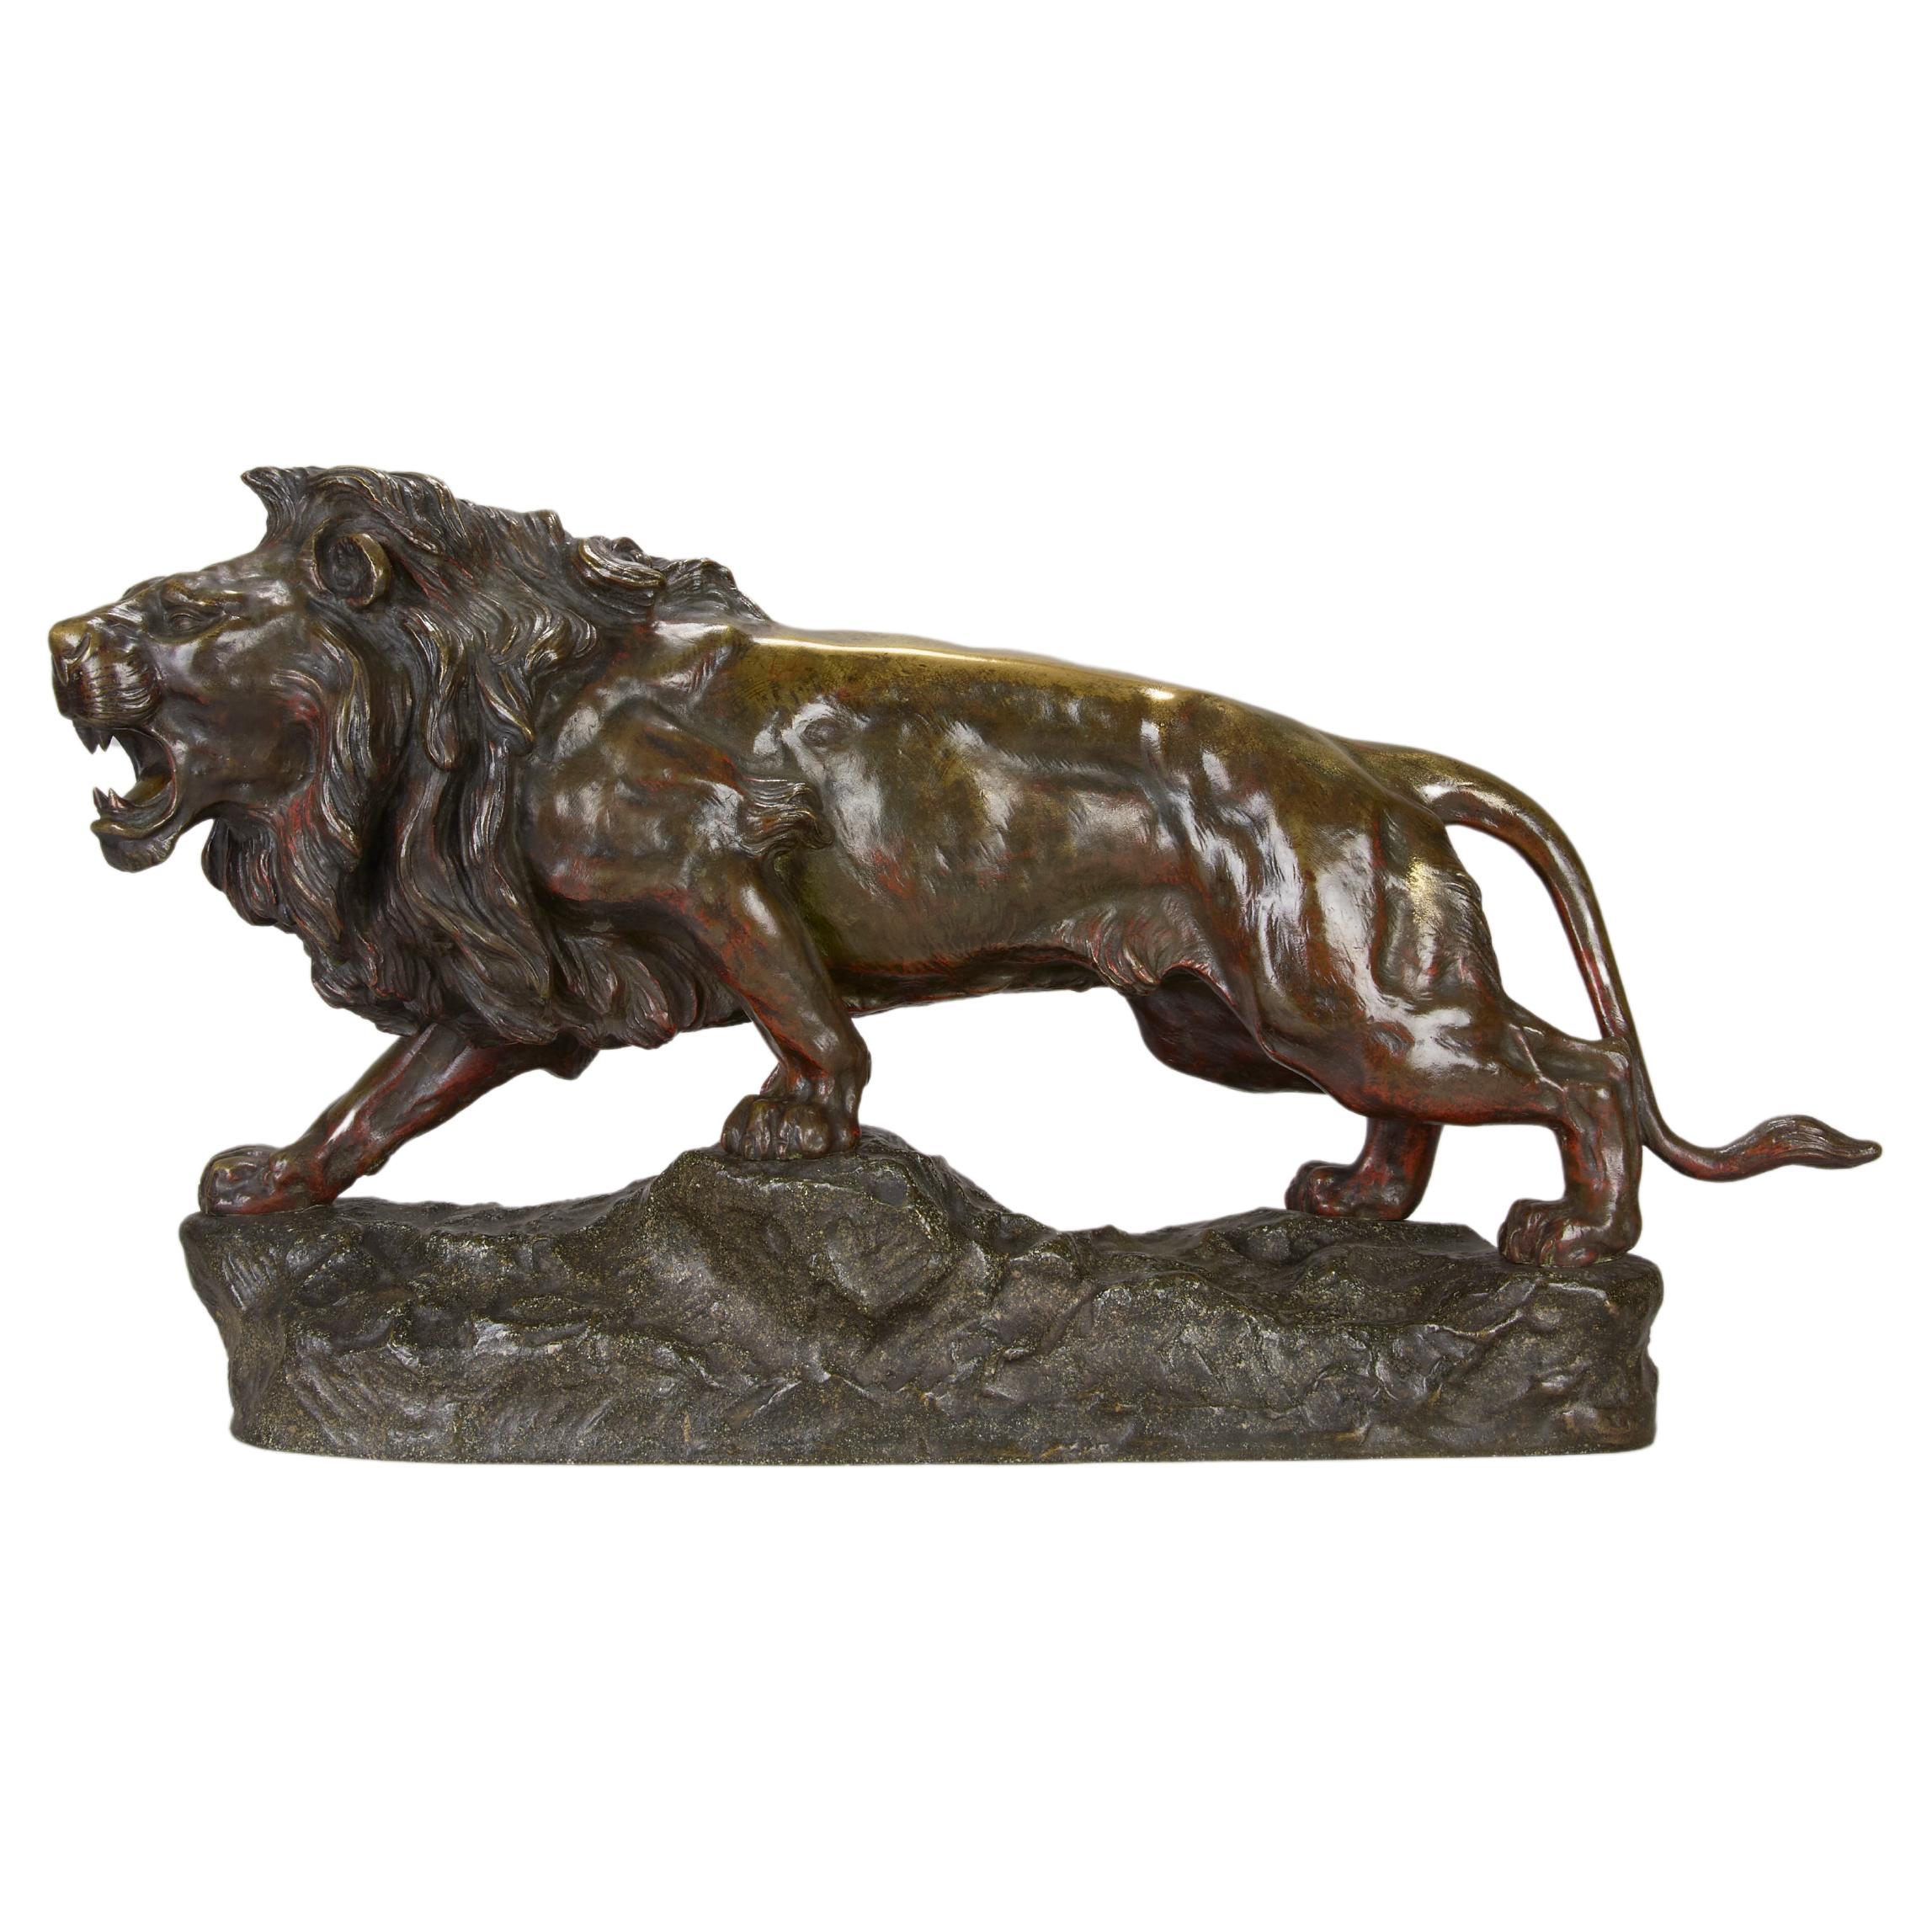 Early 20th Century Bronze Sculpture Entitled "Lion qui Marche" by J Descomps